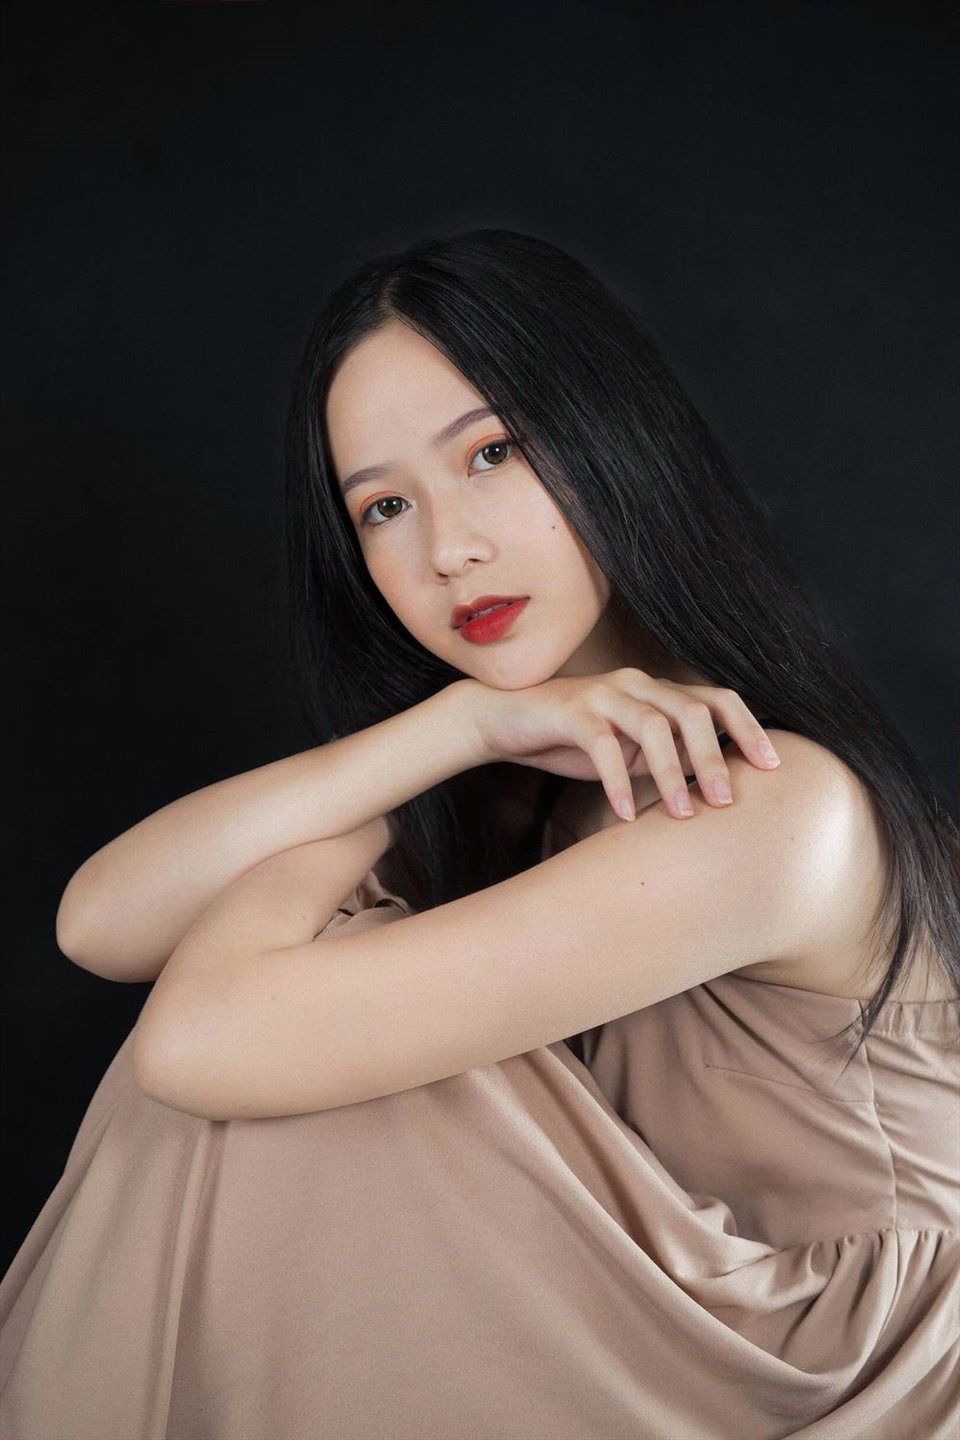 Thí sinh khiến nghệ sĩ tiếc nuối tiếp theo ở Hoa hậu Việt Nam 2020 là Phương Quỳnh. Dù lọt vào top 5 nhưng cô cho biết bản thân tự thấy thiếu may mắn trong phần thi ứng xử, tuy nhiên cô hài lòng với những gì đã làm được trong cuộc thi.